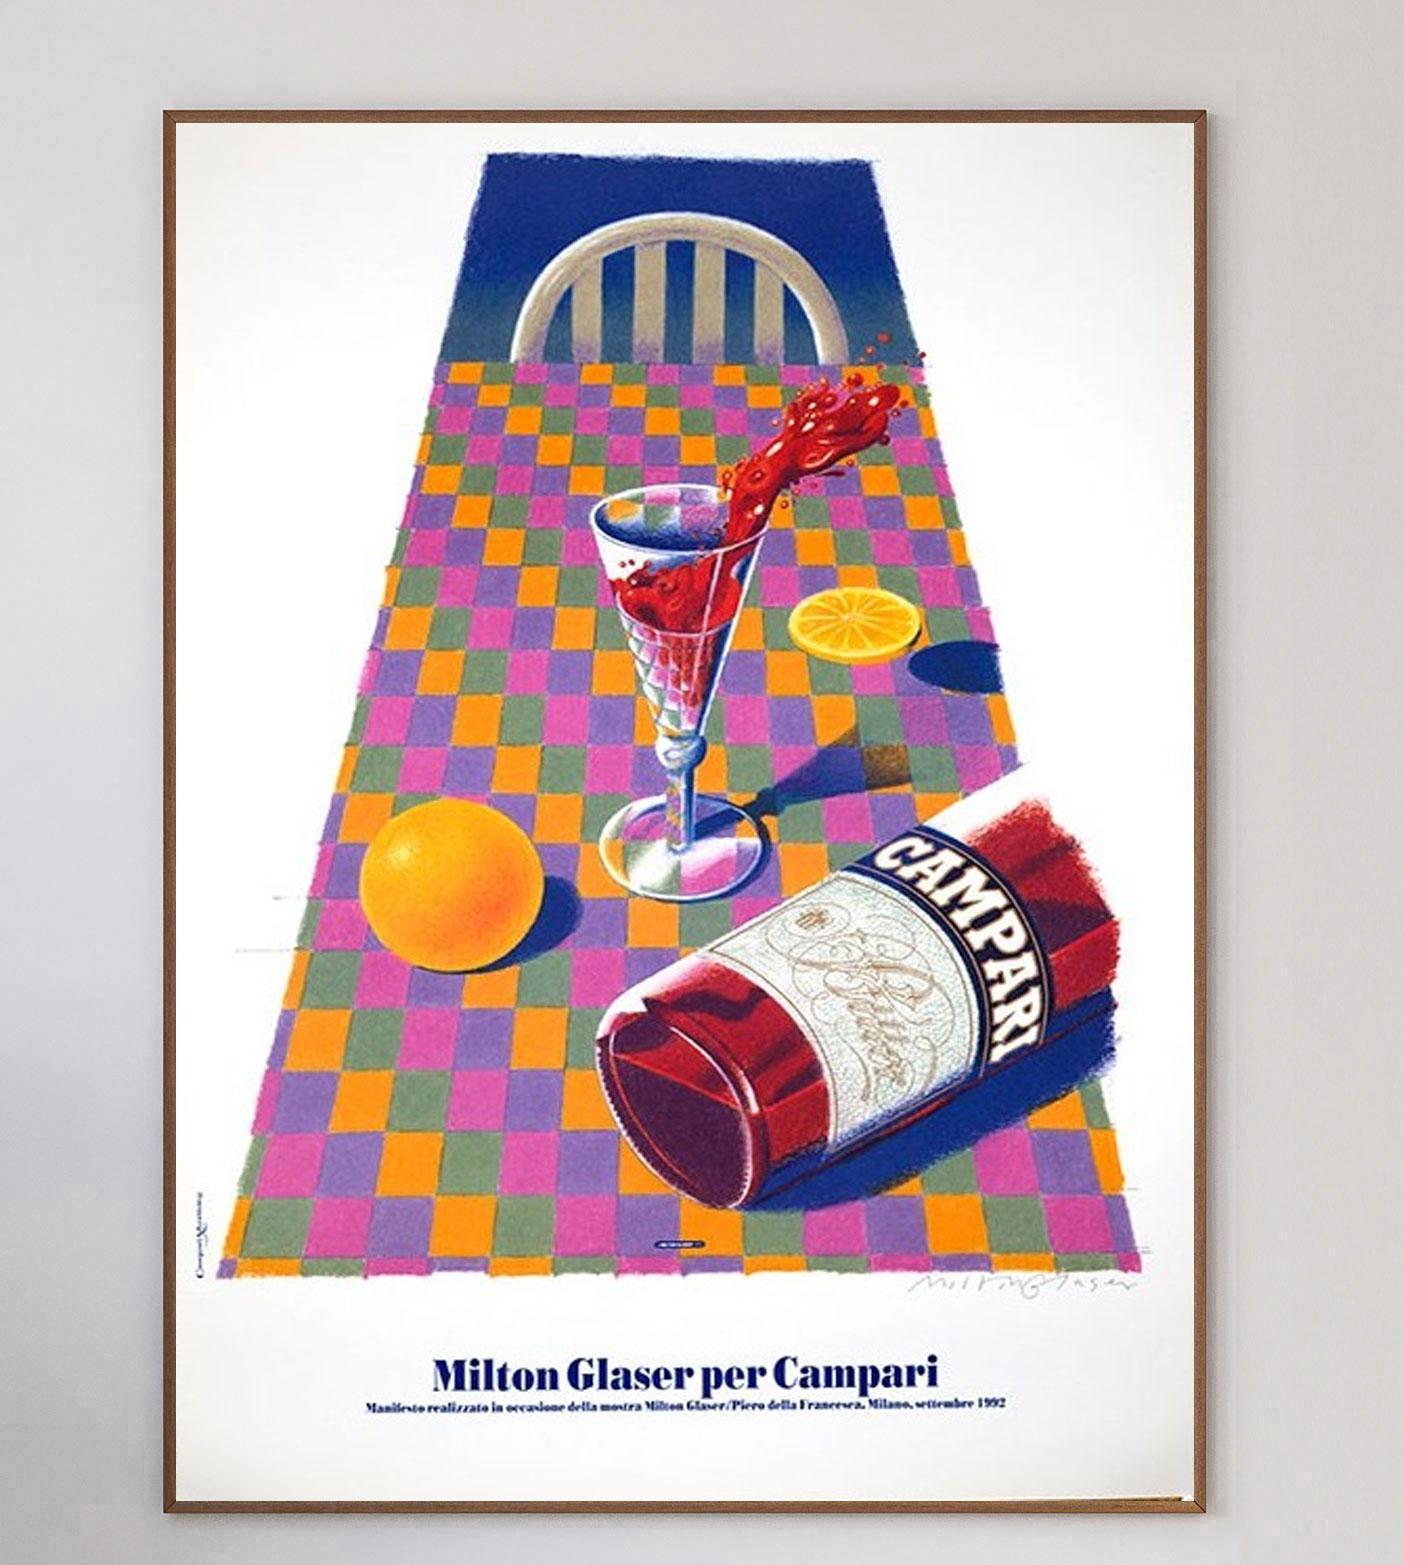 L'emblématique marque de liqueur italienne Campari a engagé le célèbre graphiste américain Milton Glaser en 1992 pour créer une série d'œuvres d'art destinées à promouvoir la boisson.

Campari a été formé en 1860 par Gaspare Campari et l'apéritif